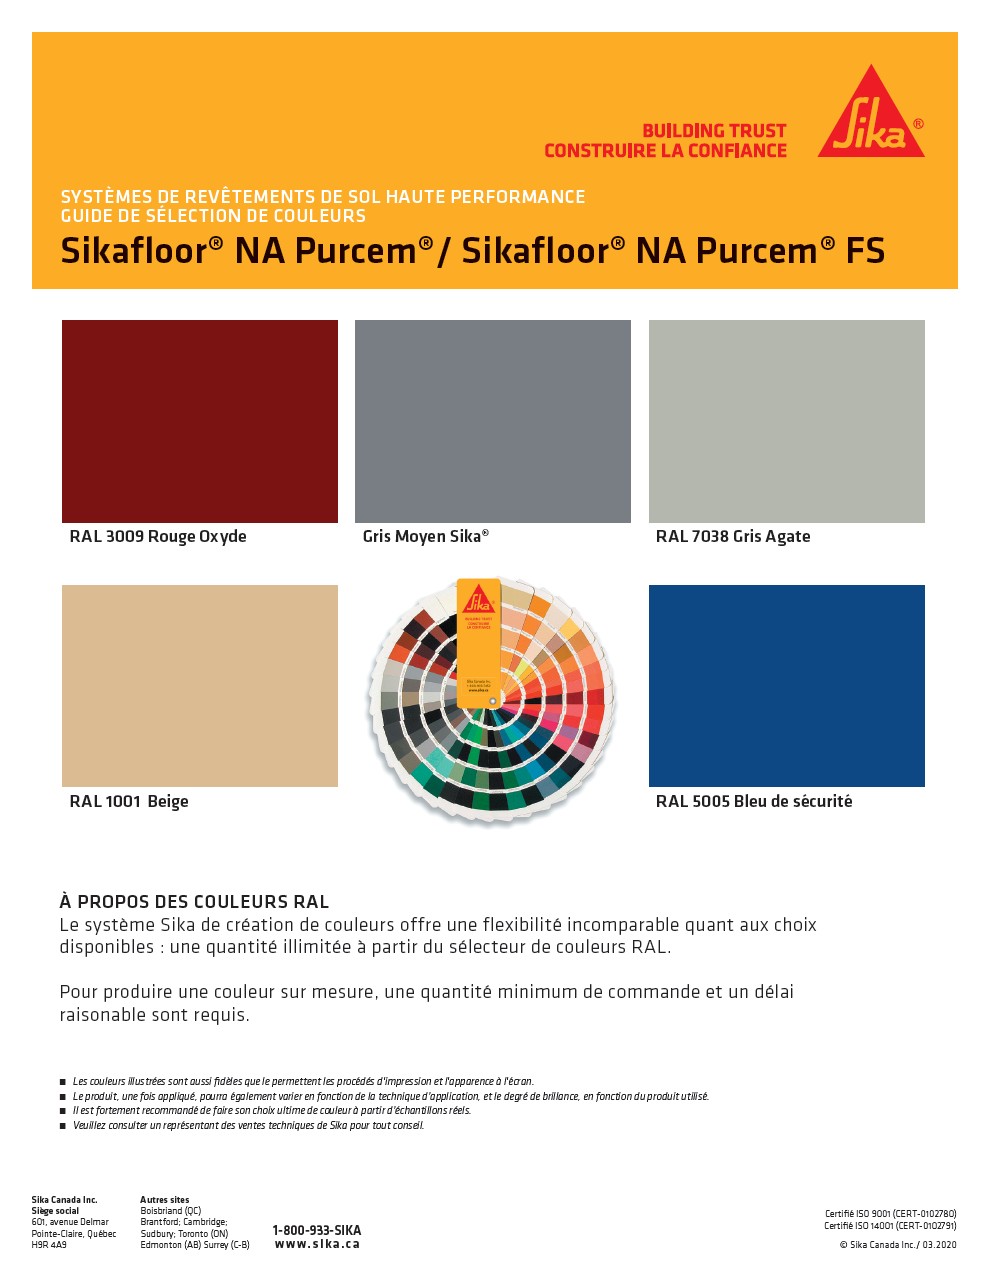 Guide de couleurs - PurCem FS